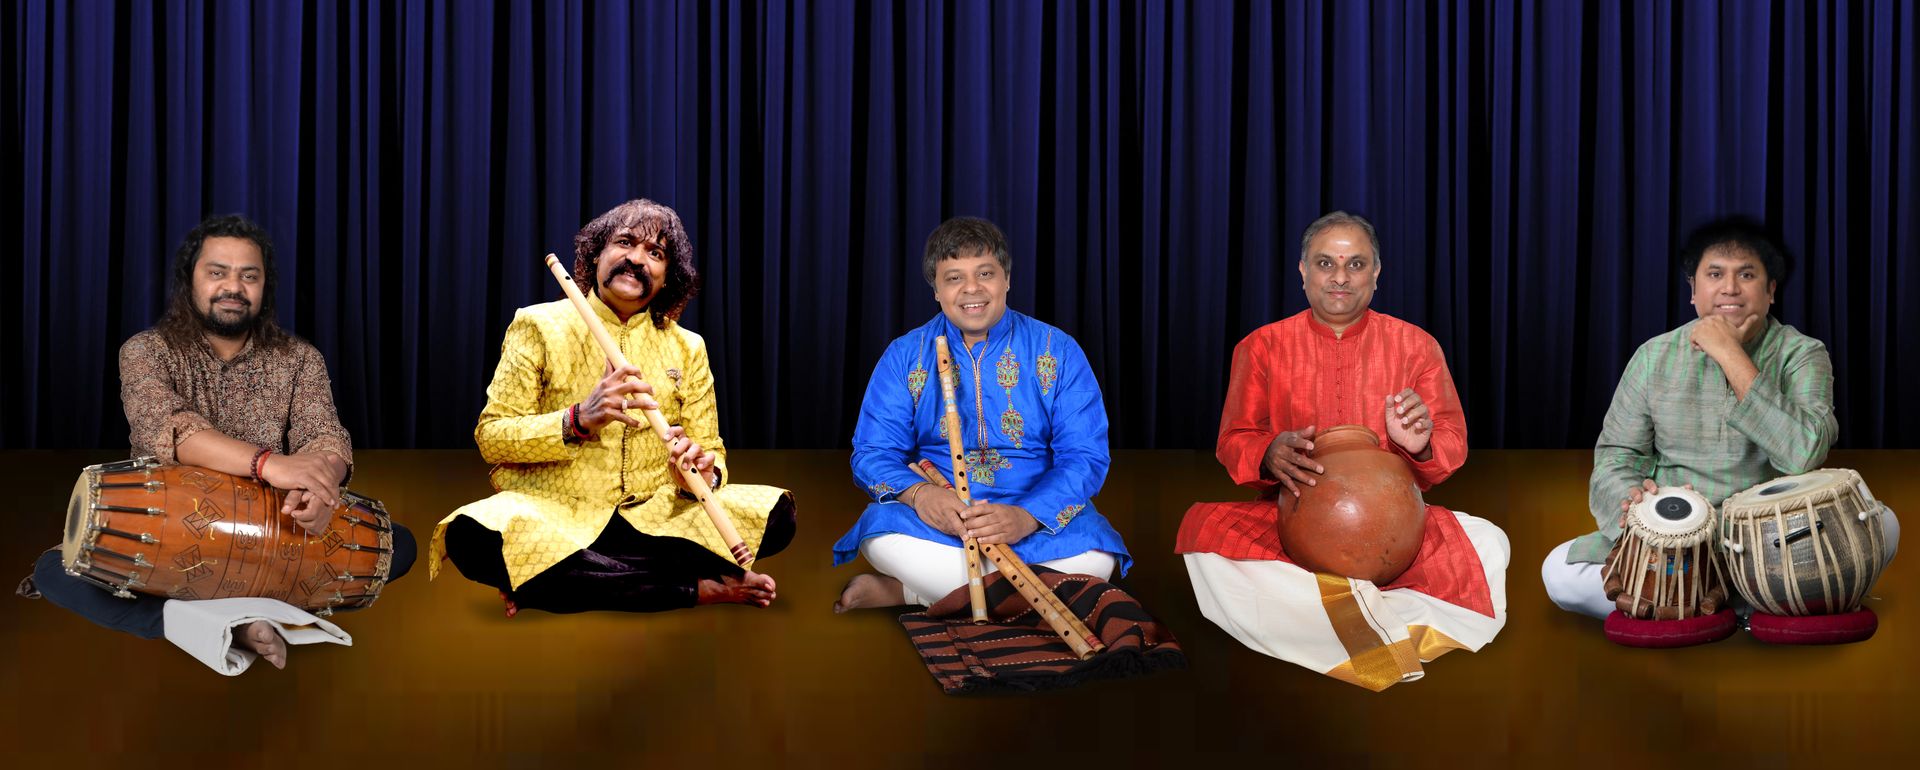 Shashank Subramanyam, Pravin Godkhindi, Satyajit Talwalkar, Patri Satish Kumar & RN Prakash